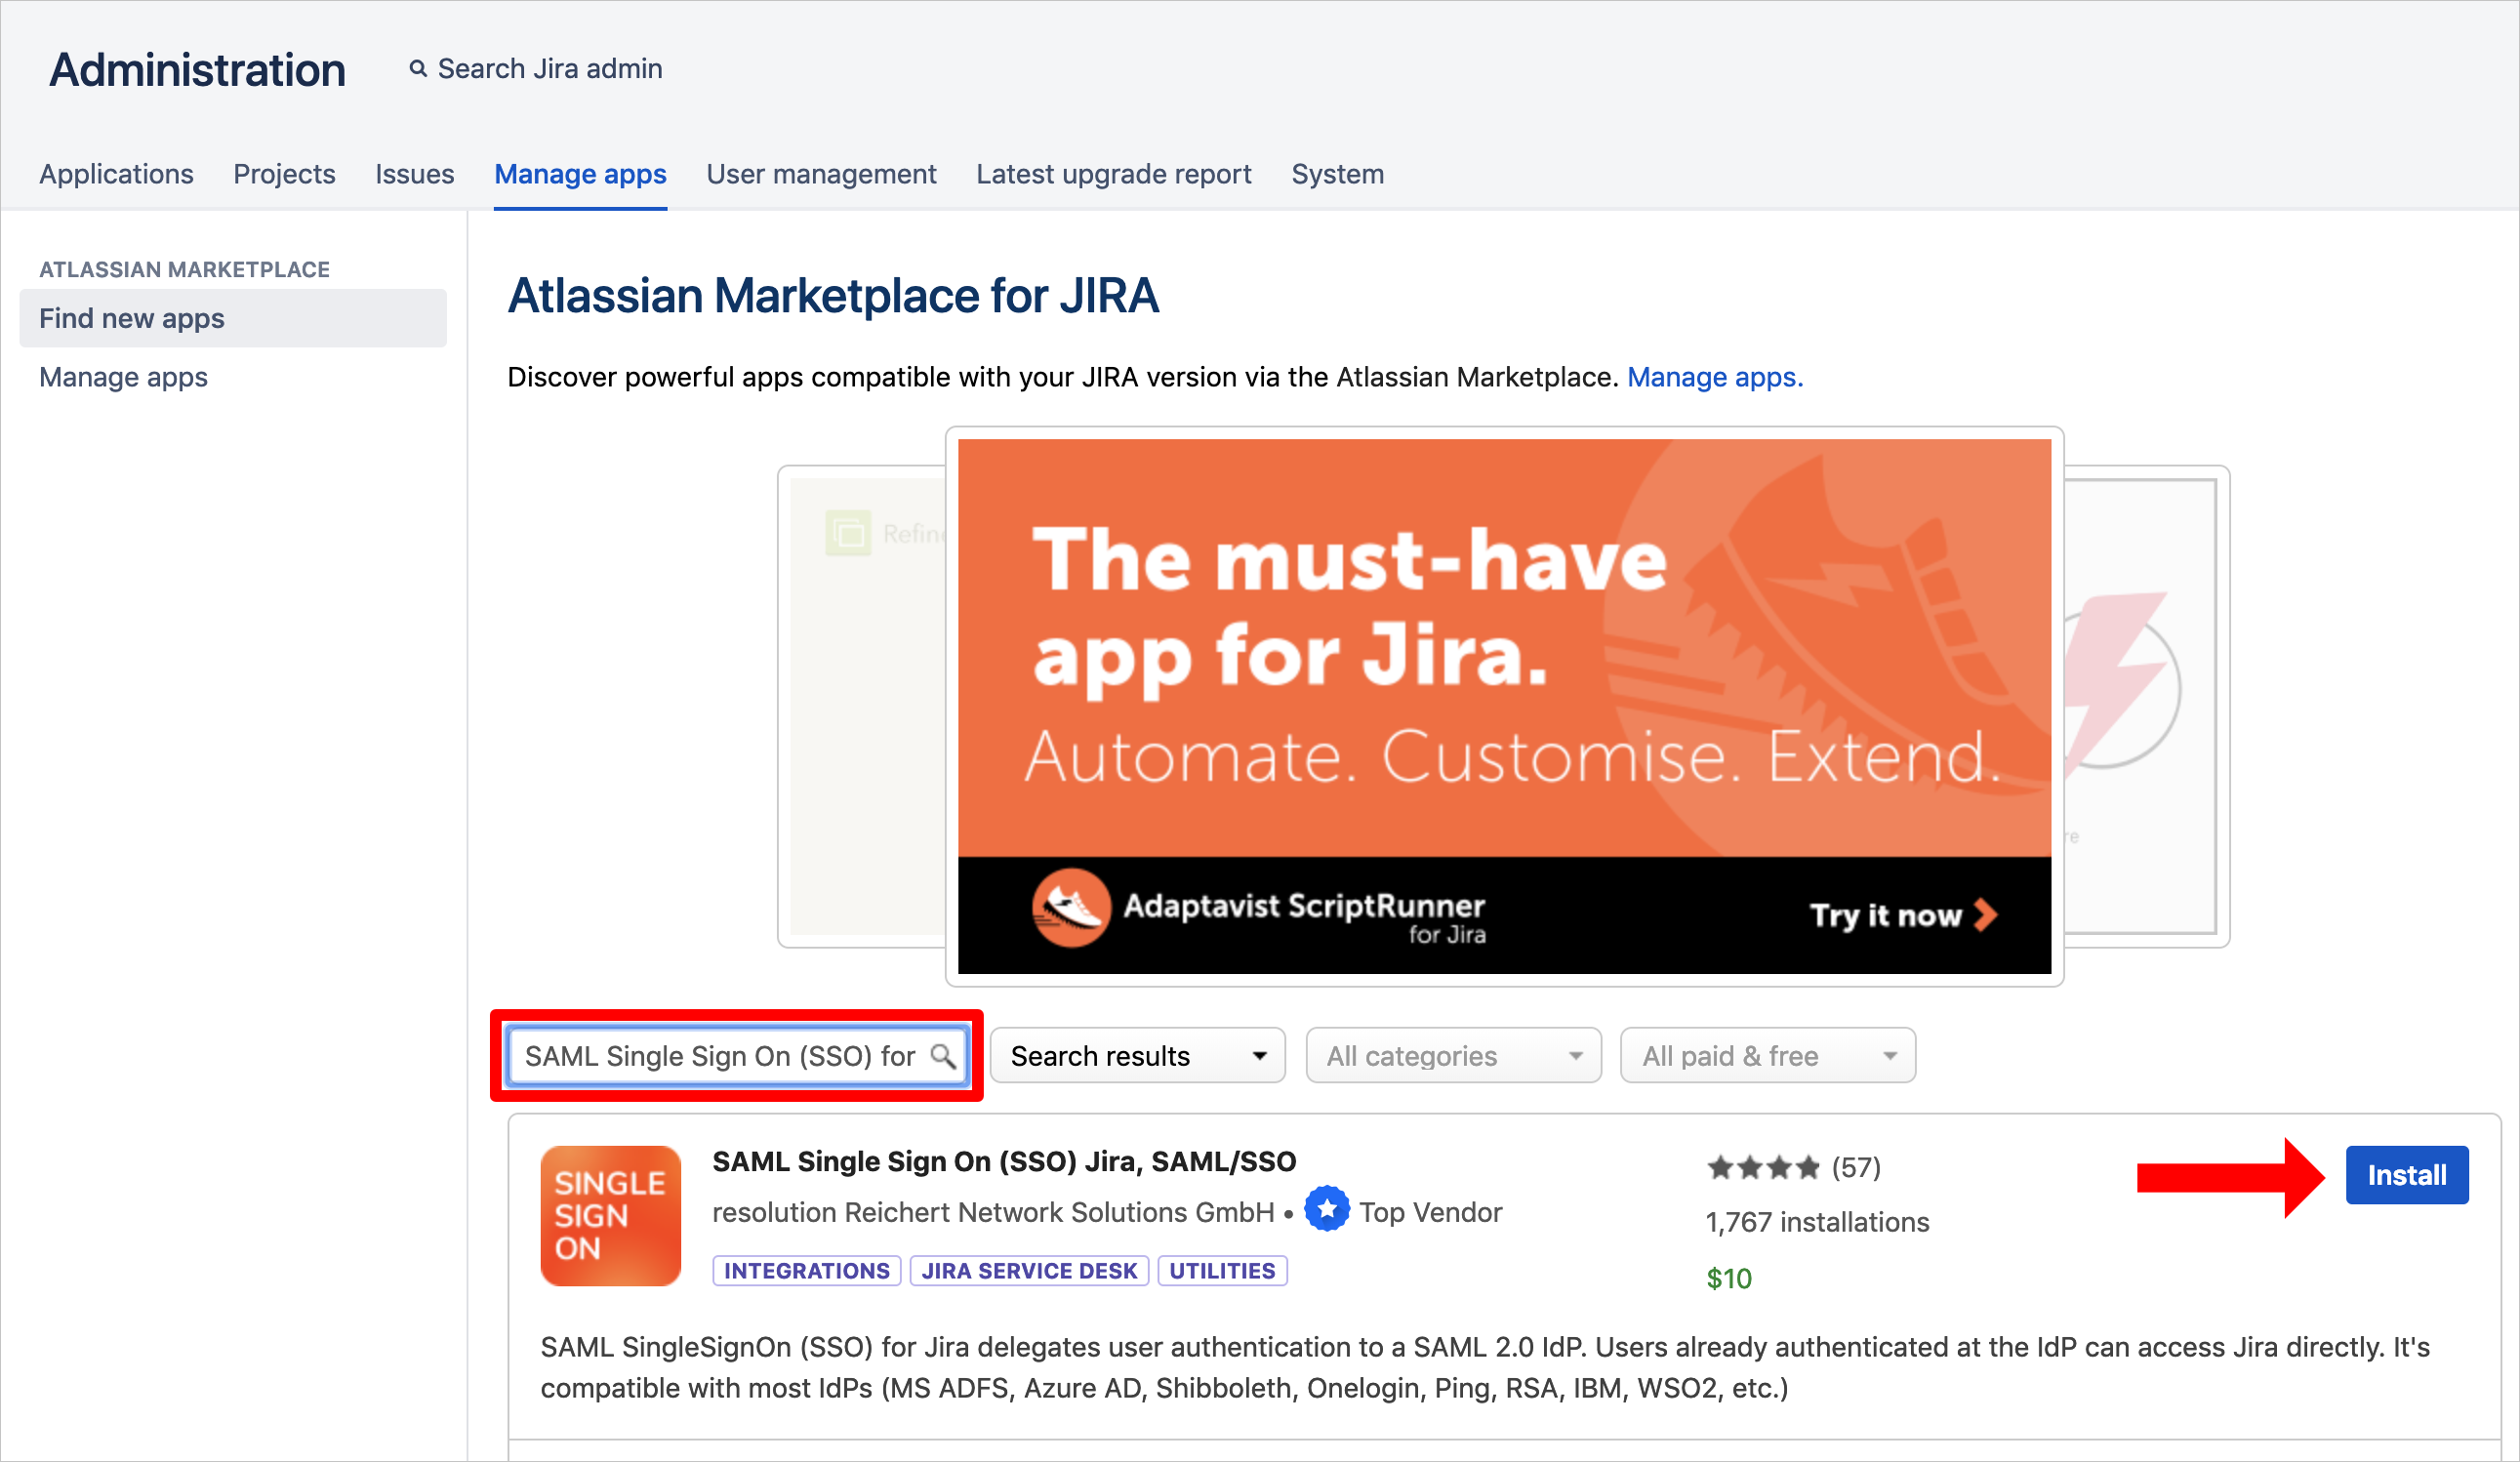 Capture d’écran montrant la page « Atlassian Marketplace for JIRA » avec une flèche pointant sur le bouton « Install » pour l’application « SAML Single Sign On (SSO) JIRA, SAML/SSO »